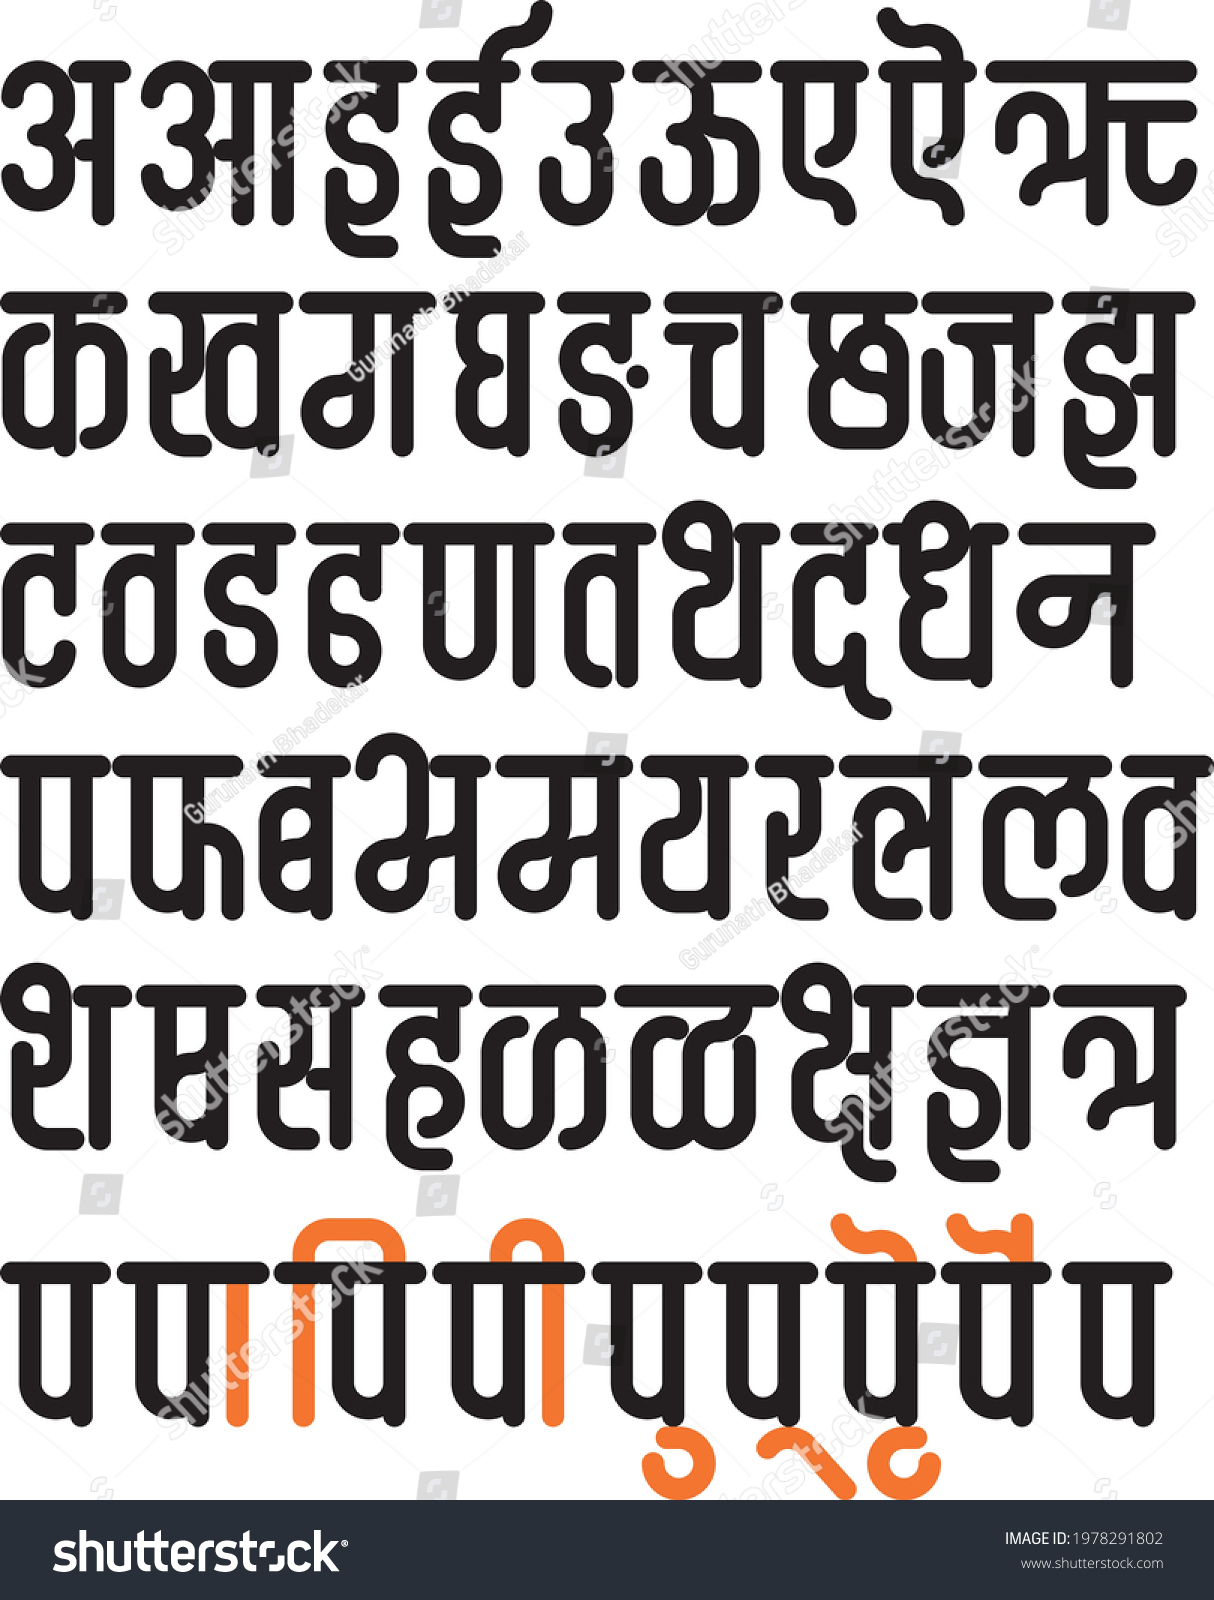 SVG of Handmade Devanagari bold font for Indian languages Hindi, Sanskrit, and Marathi, alphabets. svg